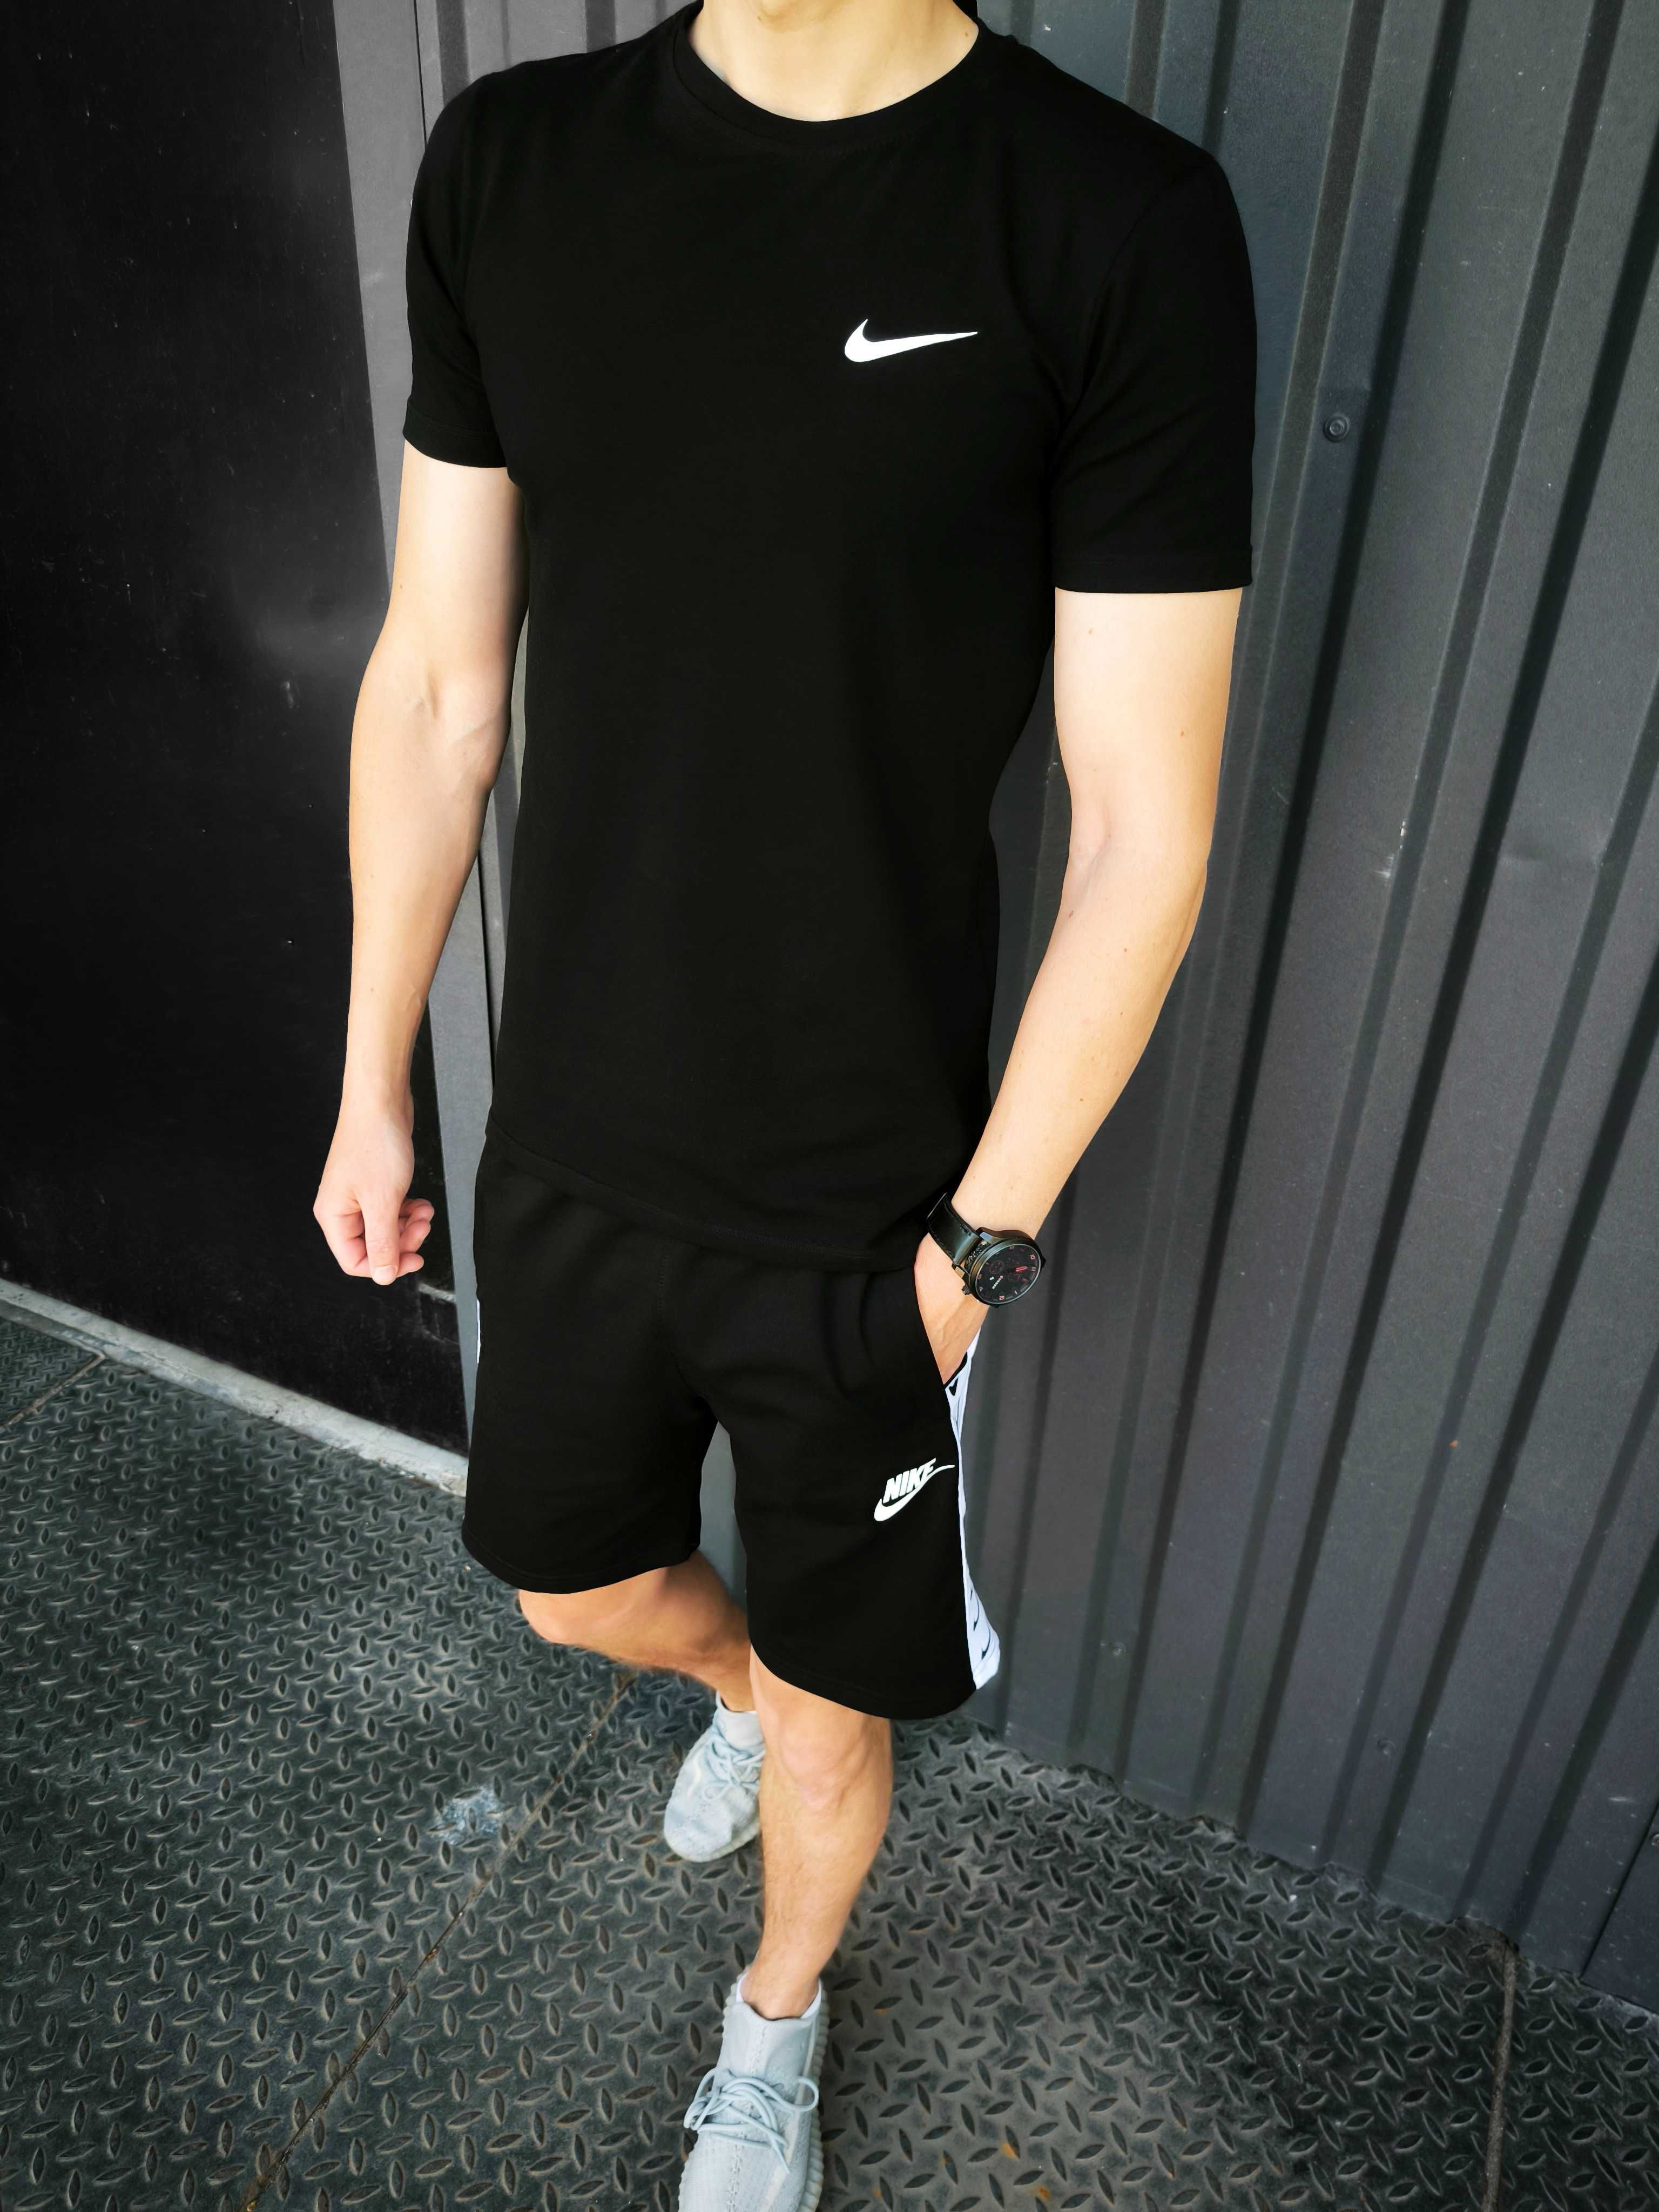 Літній чоловічий комплект Nike футболка + шорти чорний лампас